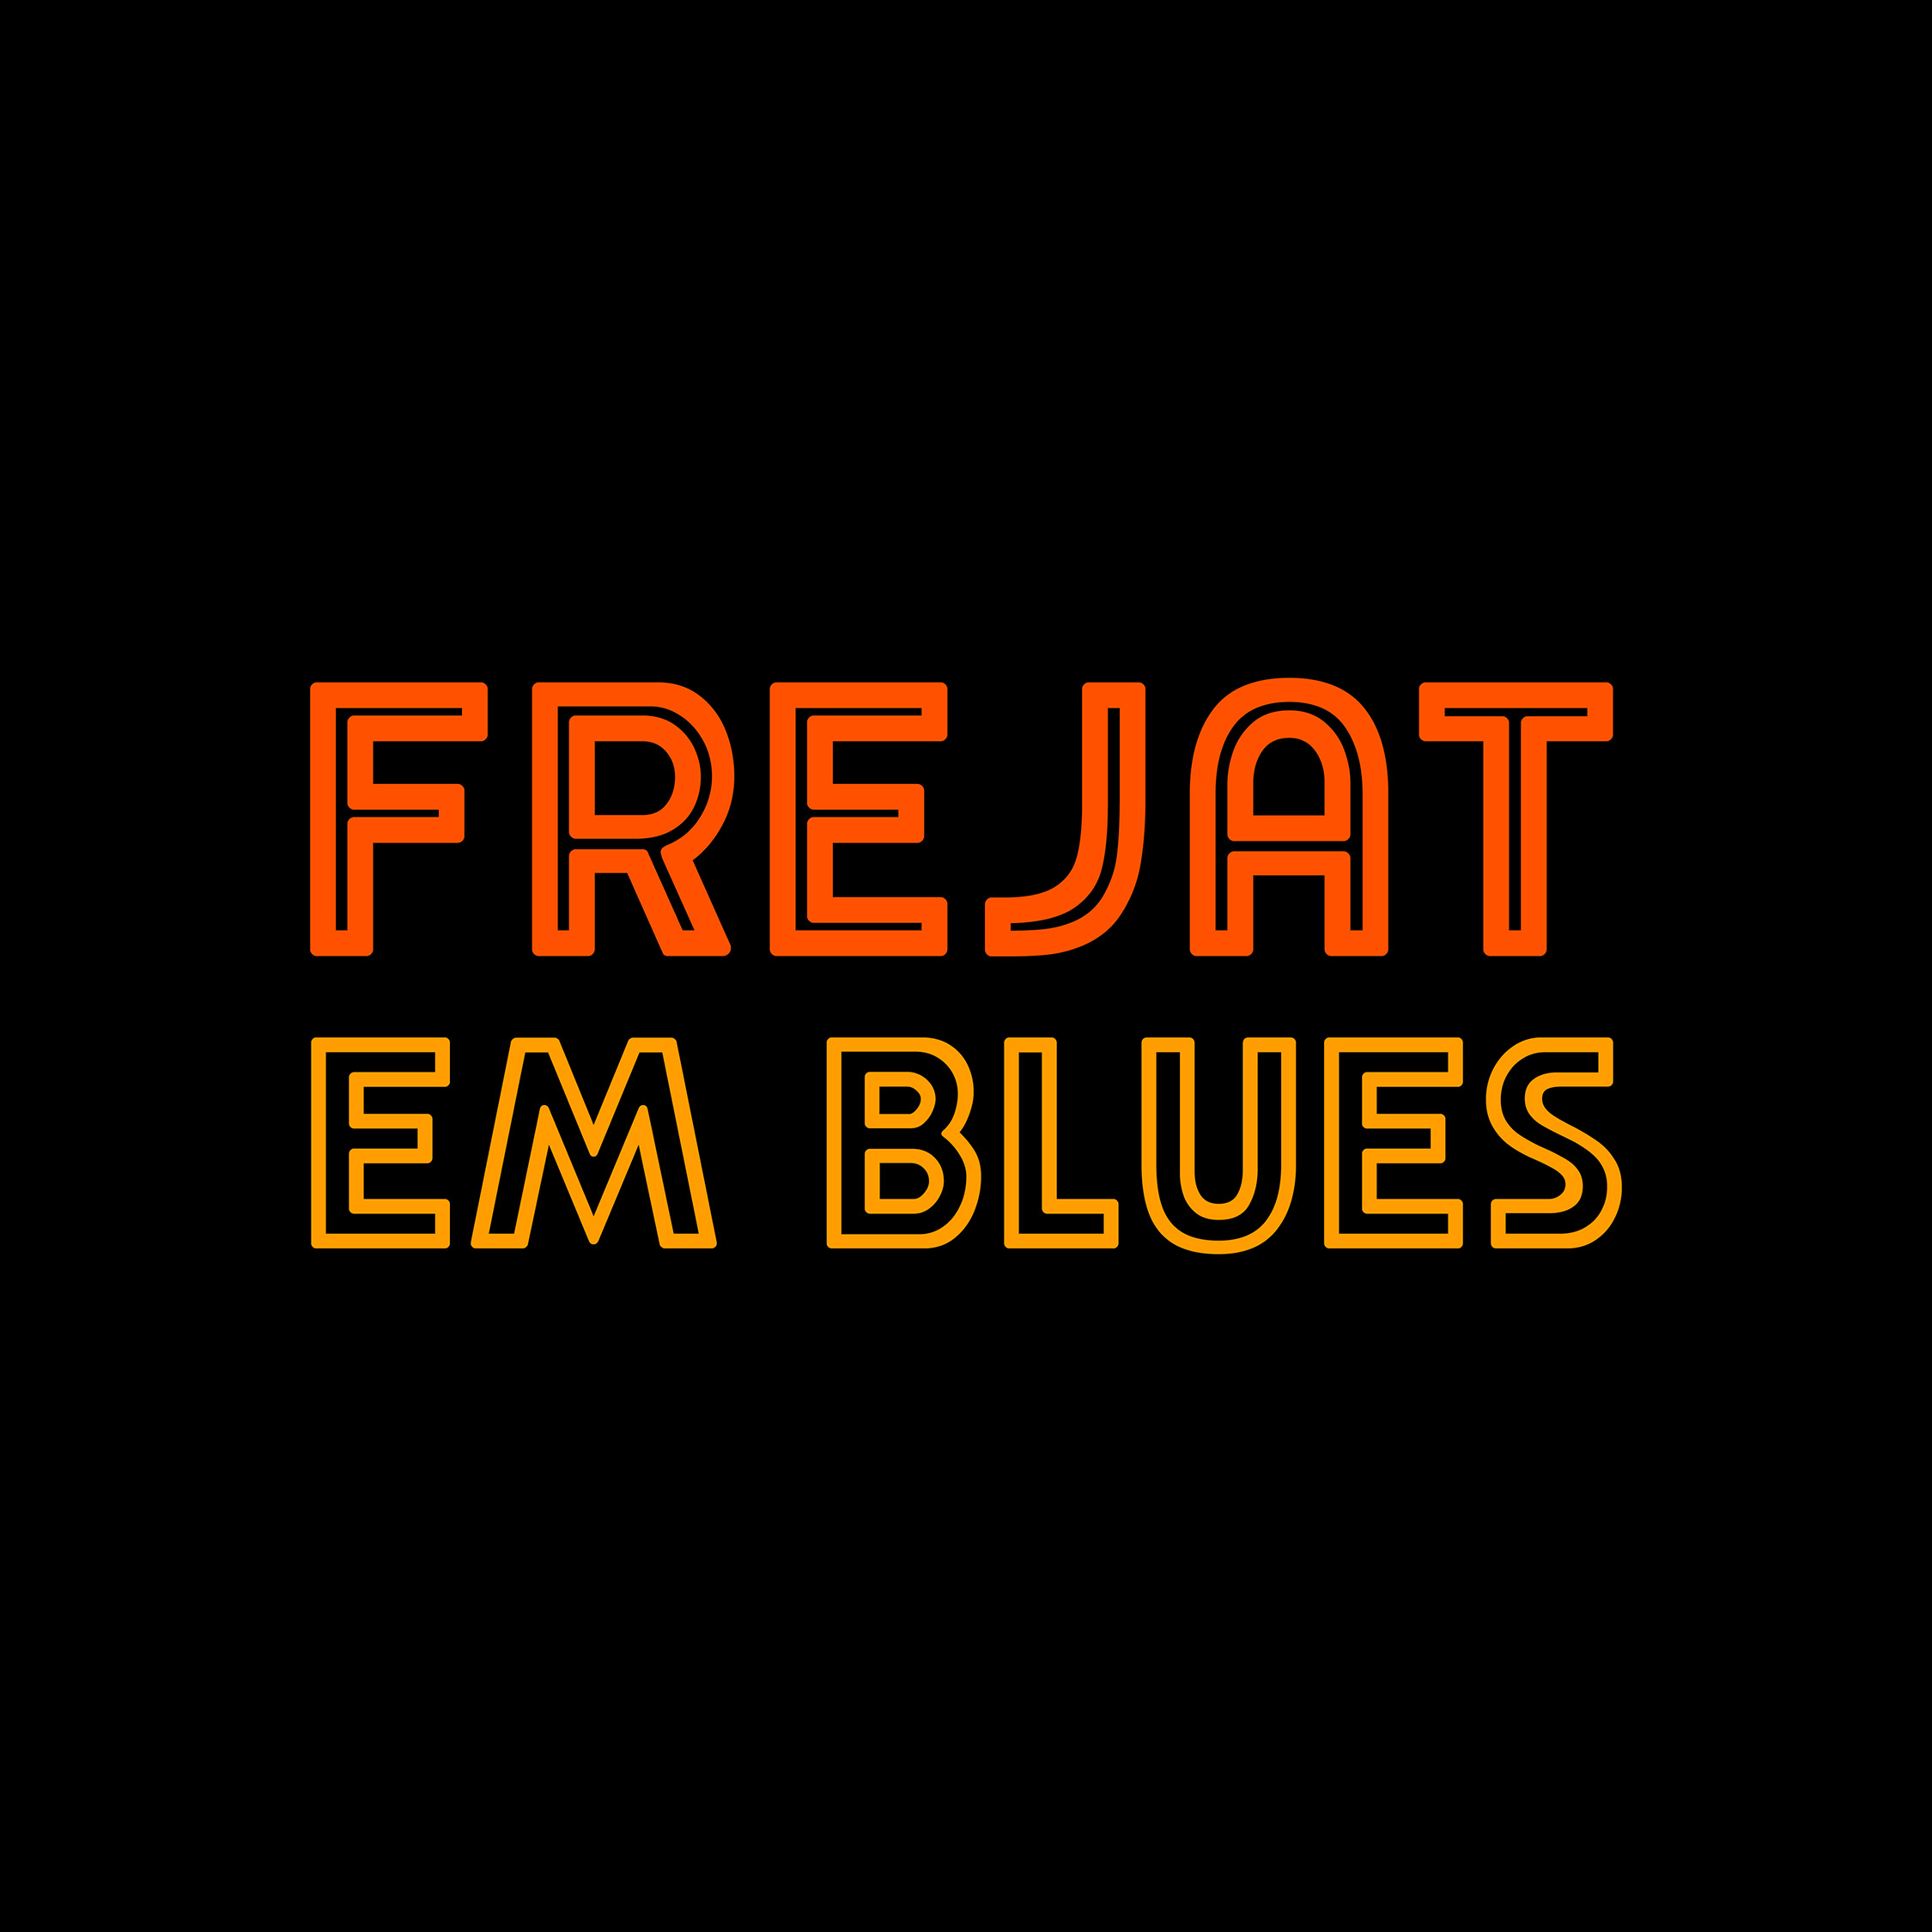 Frejat em Blues logotipo criado por Marcus Paulista